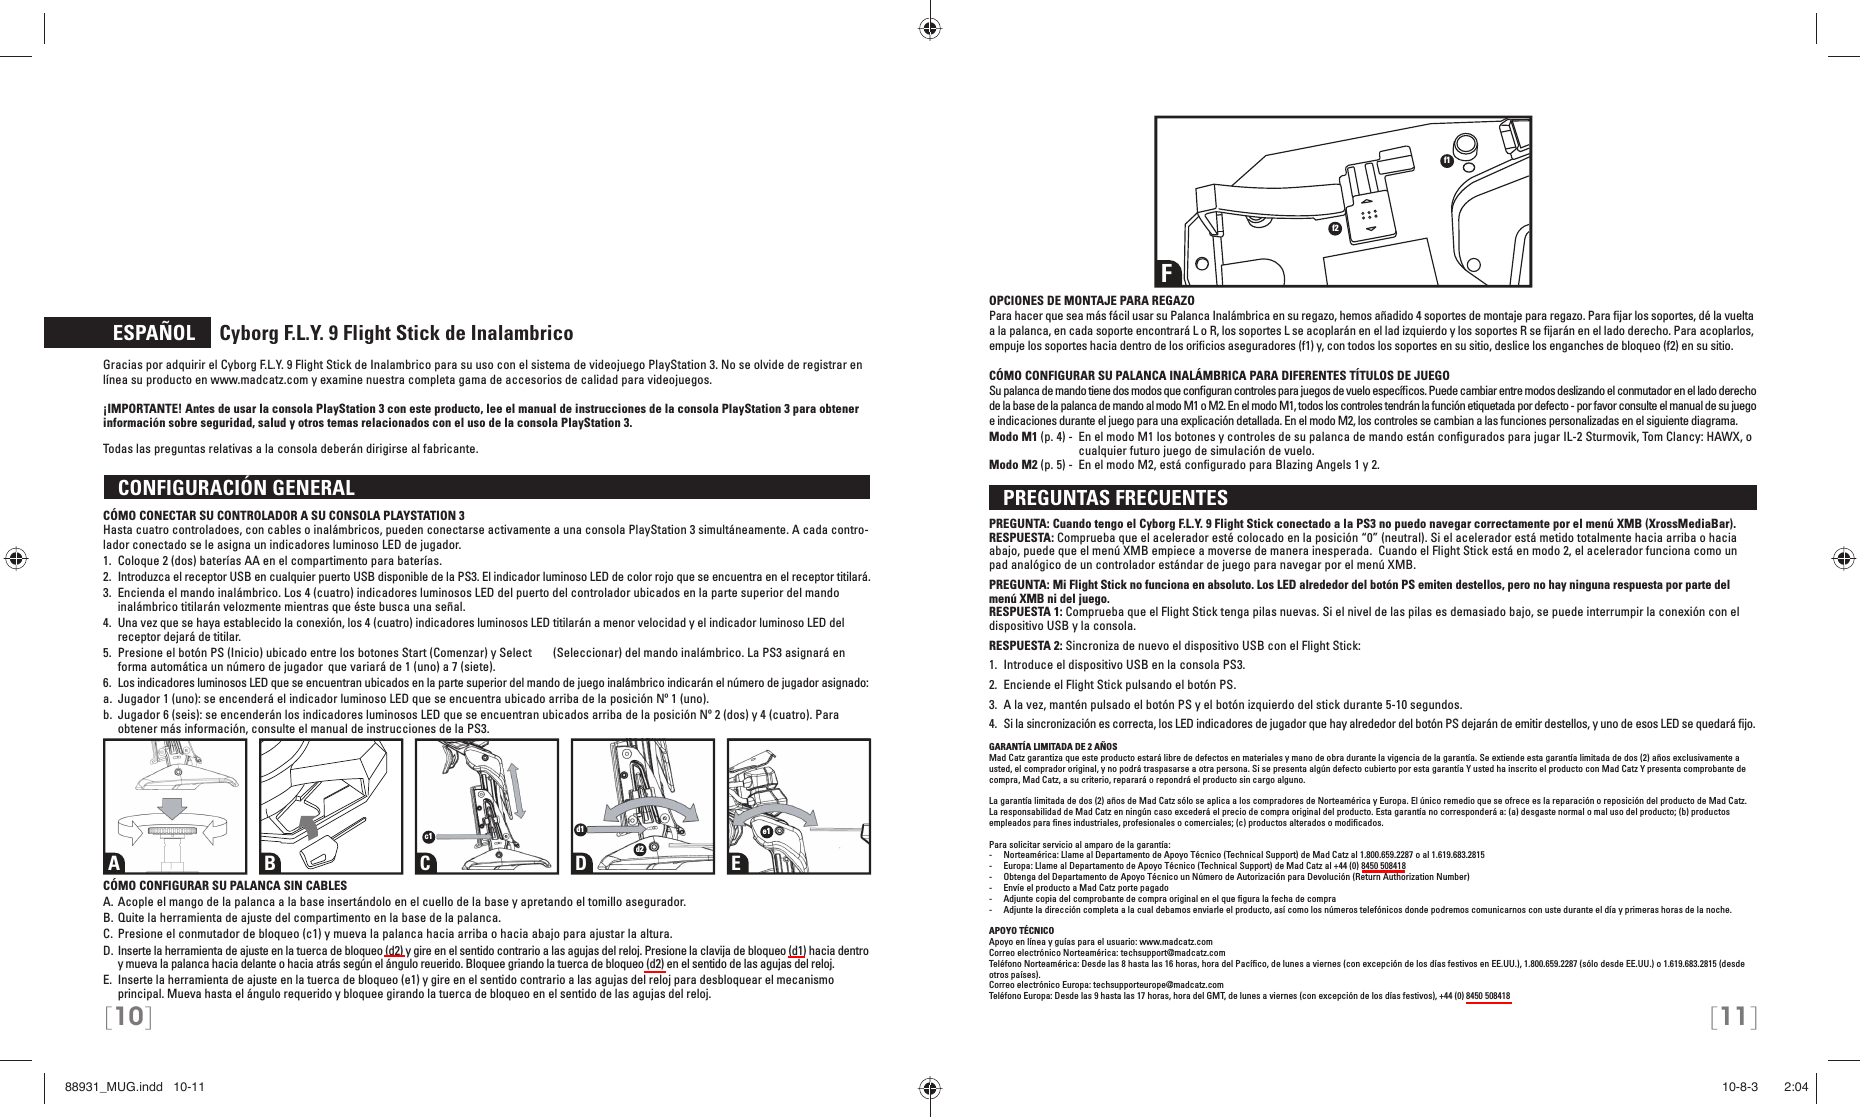 [10] [11]  ESPAÑOL     Cyborg F.L.Y. 9 Flight Stick de InalambricoGracias por adquirir el Cyborg F.L.Y. 9 Flight Stick de Inalambrico para su uso con el sistema de videojuego PlayStation 3. No se olvide de registrar en línea su producto en www.madcatz.com y examine nuestra completa gama de accesorios de calidad para videojuegos.¡IMPORTANTE! Antes de usar la consola PlayStation 3 con este producto, lee el manual de instrucciones de la consola PlayStation 3 para obtener información sobre seguridad, salud y otros temas relacionados con el uso de la consola PlayStation 3. Todas las preguntas relativas a la consola deberán dirigirse al fabricante.  CONFIGURACIÓN GENERAL CÓMO CONECTAR SU CONTROLADOR A SU CONSOLA PLAYSTATION 3Hasta cuatro controladoes, con cables o inalámbricos, pueden conectarse activamente a una consola PlayStation 3 simultáneamente. A cada contro-lador conectado se le asigna un indicadores luminoso LED de jugador.1.  Coloque 2 (dos) baterías AA en el compartimento para baterías.2.  Introduzca el receptor USB en cualquier puerto USB disponible de la PS3. El indicador  luminoso LED de color rojo que se encuentra en el receptor titilará.3.  Encienda el mando inalámbrico. Los 4 (cuatro) indicadores luminosos LED del puerto del  controlador ubicados en la parte superior del mando inalámbrico titilarán velozmente mientras  que éste busca una señal.4.  Una vez que se haya establecido la conexión, los 4 (cuatro) indicadores luminosos LED titilarán  a menor velocidad y el indicador luminoso LED del receptor dejará de titilar.5.  Presione el botón PS (Inicio) ubicado entre los botones Start (Comenzar) y Select   (Seleccionar) del mando inalámbrico. La PS3 asignará en forma automática un número de jugador   que variará de 1 (uno) a 7 (siete).6.  Los indicadores luminosos LED que se encuentran ubicados en la parte superior del mando de  juego inalámbrico indicarán el número de jugador asignado:a.  Jugador 1 (uno): se encenderá el indicador luminoso LED que se encuentra ubicado arriba de  la posición Nº 1 (uno).b.  Jugador 6 (seis): se encenderán los indicadores luminosos LED que se encuentran ubicados  arriba de la posición Nº 2 (dos) y 4 (cuatro). Para obtener más información, consulte el manual de  instrucciones de la PS3.CÓMO CONFIGURAR SU PALANCA SIN CABLESA. Acople el mango de la palanca a la base insertándolo en el cuello de la base y apretando el tomillo asegurador.B. Quite la herramienta de ajuste del compartimento en la base de la palanca.C. Presione el conmutador de bloqueo (c1) y mueva la palanca hacia arriba o hacia abajo para ajustar la altura.D. Inserte la herramienta de ajuste en la tuerca de bloqueo (d2) y gire en el sentido contrario a las agujas del reloj. Presione la clavija de bloqueo (d1) hacia dentro y mueva la palanca hacia delante o hacia atrás según el ángulo reuerido. Bloquee griando la tuerca de bloqueo (d2) en el sentido de las agujas del reloj.E.  Inserte la herramienta de ajuste en la tuerca de bloqueo (e1) y gire en el sentido contrario a las agujas del reloj para desbloquear el mecanismo principal. Mueva hasta el ángulo requerido y bloquee girando la tuerca de bloqueo en el sentido de las agujas del reloj.OPCIONES DE MONTAJE PARA REGAZOPara hacer que sea más fácil usar su Palanca Inalámbrica en su regazo, hemos añadido 4 soportes de montaje para regazo. Para ﬁ jar los soportes, dé la vuelta a la palanca, en cada soporte encontrará L o R, los soportes L se acoplarán en el lad izquierdo y los soportes R se ﬁ jarán en el lado derecho. Para acoplarlos, empuje los soportes hacia dentro de los oriﬁ cios aseguradores (f1) y, con todos los soportes en su sitio, deslice los enganches de bloqueo (f2) en su sitio.CÓMO CONFIGURAR SU PALANCA INALÁMBRICA PARA DIFERENTES TÍTULOS DE JUEGOSu palanca de mando tiene dos modos que conﬁ guran controles para juegos de vuelo especíﬁ cos. Puede cambiar entre modos deslizando el conmutador en el lado derecho de la base de la palanca de mando al modo M1 o M2. En el modo M1, todos los controles tendrán la función etiquetada por defecto - por favor consulte el manual de su juego e indicaciones durante el juego para una explicación detallada. En el modo M2, los controles se cambian a las funciones personalizadas en el siguiente diagrama.Modo M1 (p. 4) -  En el modo M1 los botones y controles de su palanca de mando están conﬁ gurados para jugar IL-2 Sturmovik, Tom Clancy: HAWX, o cualquier futuro juego de simulación de vuelo.Modo M2 (p. 5) -  En el modo M2, está conﬁ gurado para Blazing Angels 1 y 2.   PREGUNTAS FRECUENTES PREGUNTA: Cuando tengo el Cyborg F.L.Y. 9 Flight Stick conectado a la PS3 no puedo navegar correctamente por el menú XMB (XrossMediaBar).RESPUESTA: Comprueba que el acelerador esté colocado en la posición “0” (neutral). Si el acelerador está metido totalmente hacia arriba o hacia abajo, puede que el menú XMB empiece a moverse de manera inesperada.  Cuando el Flight Stick está en modo 2, el acelerador funciona como un pad analógico de un controlador estándar de juego para navegar por el menú XMB.PREGUNTA: Mi Flight Stick no funciona en absoluto. Los LED alrededor del botón PS emiten destellos, pero no hay ninguna respuesta por parte del menú XMB ni del juego.RESPUESTA 1: Comprueba que el Flight Stick tenga pilas nuevas. Si el nivel de las pilas es demasiado bajo, se puede interrumpir la conexión con el dispositivo USB y la consola.RESPUESTA 2: Sincroniza de nuevo el dispositivo USB con el Flight Stick: 1.  Introduce el dispositivo USB en la consola PS3.2.  Enciende el Flight Stick pulsando el botón PS. 3.  A la vez, mantén pulsado el botón PS y el botón izquierdo del stick durante 5-10 segundos. 4.  Si la sincronización es correcta, los LED indicadores de jugador que hay alrededor del botón PS dejarán de emitir destellos, y uno de esos LED se quedará ﬁ jo.GARANTÍA LIMITADA DE 2 AÑOS Mad Catz garantiza que este producto estará libre de defectos en materiales y mano de obra durante la vigencia de la garantía. Se extiende esta garantía limitada de dos (2) años exclusivamente a usted, el comprador original, y no podrá traspasarse a otra persona. Si se presenta algún defecto cubierto por esta garantía Y usted ha inscrito el producto con Mad Catz Y presenta comprobante de compra, Mad Catz, a su criterio, reparará o repondrá el producto sin cargo alguno.La garantía limitada de dos (2) años de Mad Catz sólo se aplica a los compradores de Norteamérica y Europa. El único remedio que se ofrece es la reparación o reposición del producto de Mad Catz. La responsabilidad de Mad Catz en ningún caso excederá el precio de compra original del producto. Esta garantía no corresponderá a: (a) desgaste normal o mal uso del producto; (b) productos empleados para ﬁ nes industriales, profesionales o comerciales; (c) productos alterados o modiﬁ cados.Para solicitar servicio al amparo de la garantía:-  Norteamérica: Llame al Departamento de Apoyo Técnico (Technical Support) de Mad Catz al 1.800.659.2287 o al 1.619.683.2815-  Europa: Llame al Departamento de Apoyo Técnico (Technical Support) de Mad Catz al +44 (0) 8450 508418-  Obtenga del Departamento de Apoyo Técnico un Número de Autorización para Devolución (Return Authorization Number)-  Envíe el producto a Mad Catz porte pagado-  Adjunte copia del comprobante de compra original en el que ﬁ gura la fecha de compra-  Adjunte la dirección completa a la cual debamos enviarle el producto, así como los números telefónicos donde podremos comunicarnos con uste durante el día y primeras horas de la noche.APOYO TÉCNICO Apoyo en línea y guías para el usuario: www.madcatz.comCorreo electrónico Norteamérica: techsupport@madcatz.comTeléfono Norteamérica: Desde las 8 hasta las 16 horas, hora del Pacíﬁ co, de lunes a viernes (con excepción de los días festivos en EE.UU.), 1.800.659.2287 (sólo desde EE.UU.) o 1.619.683.2815 (desde otros países).Correo electrónico Europa: techsupporteurope@madcatz.comTeléfono Europa: Desde las 9 hasta las 17 horas, hora del GMT, de lunes a viernes (con excepción de los días festivos), +44 (0) 8450 508418A B C D Ec1 d1d2e1Ff1f288931_MUG.indd   10-1188931_MUG.indd   10-11 10-8-3       2:0410-8-3       2:04